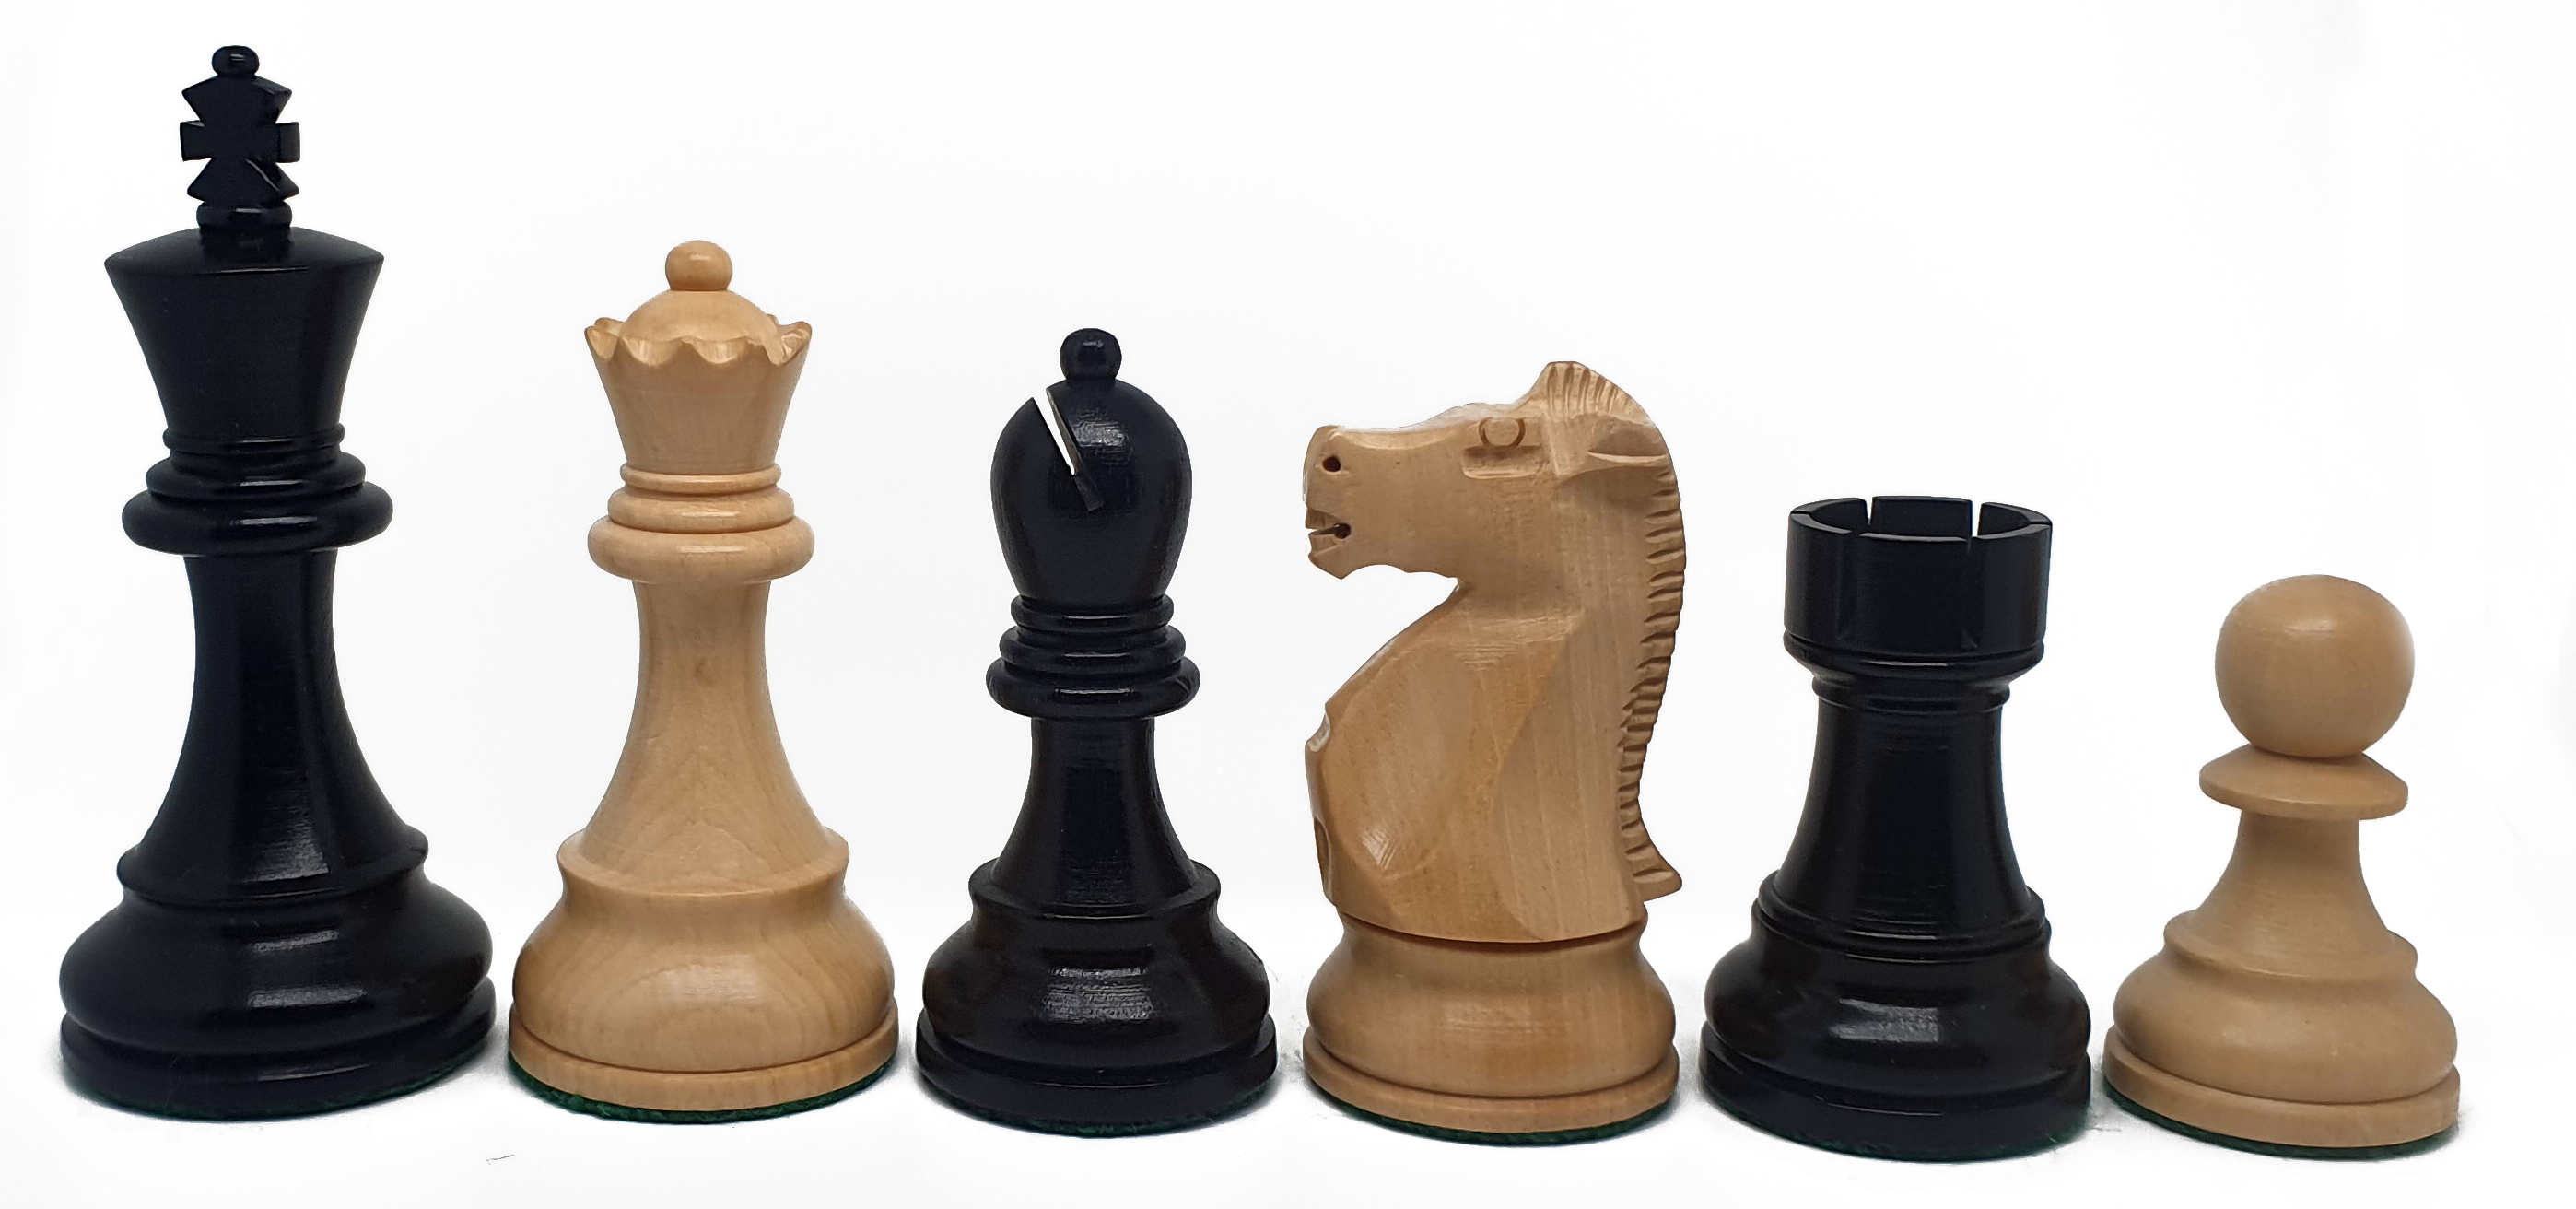 VI/ Piezas de ajedrez modelo Fischer - Spassky "3,75" Ebanizado